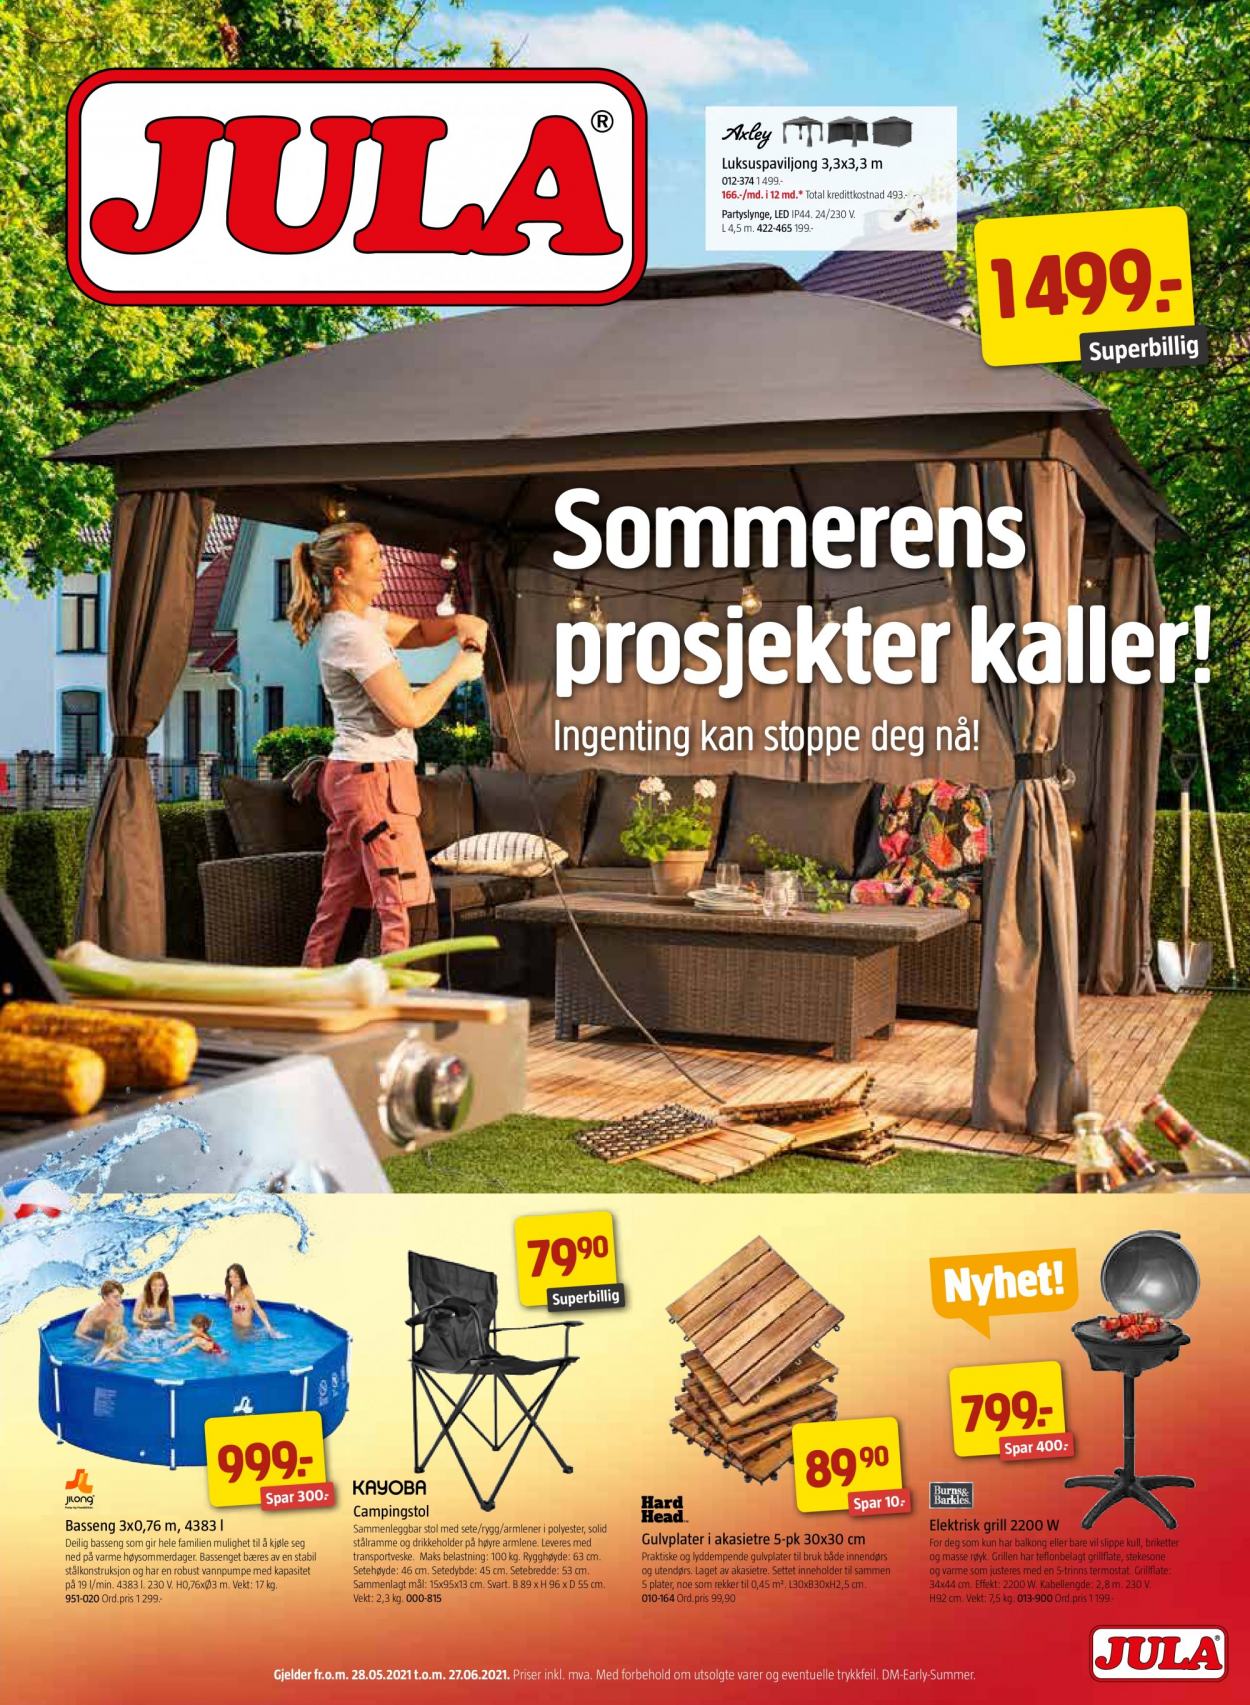 thumbnail - Kundeavis Jula - 28.5.2021 - 27.6.2021 - Produkter fra tilbudsaviser - Kayoba, stol, grill. Side 1.